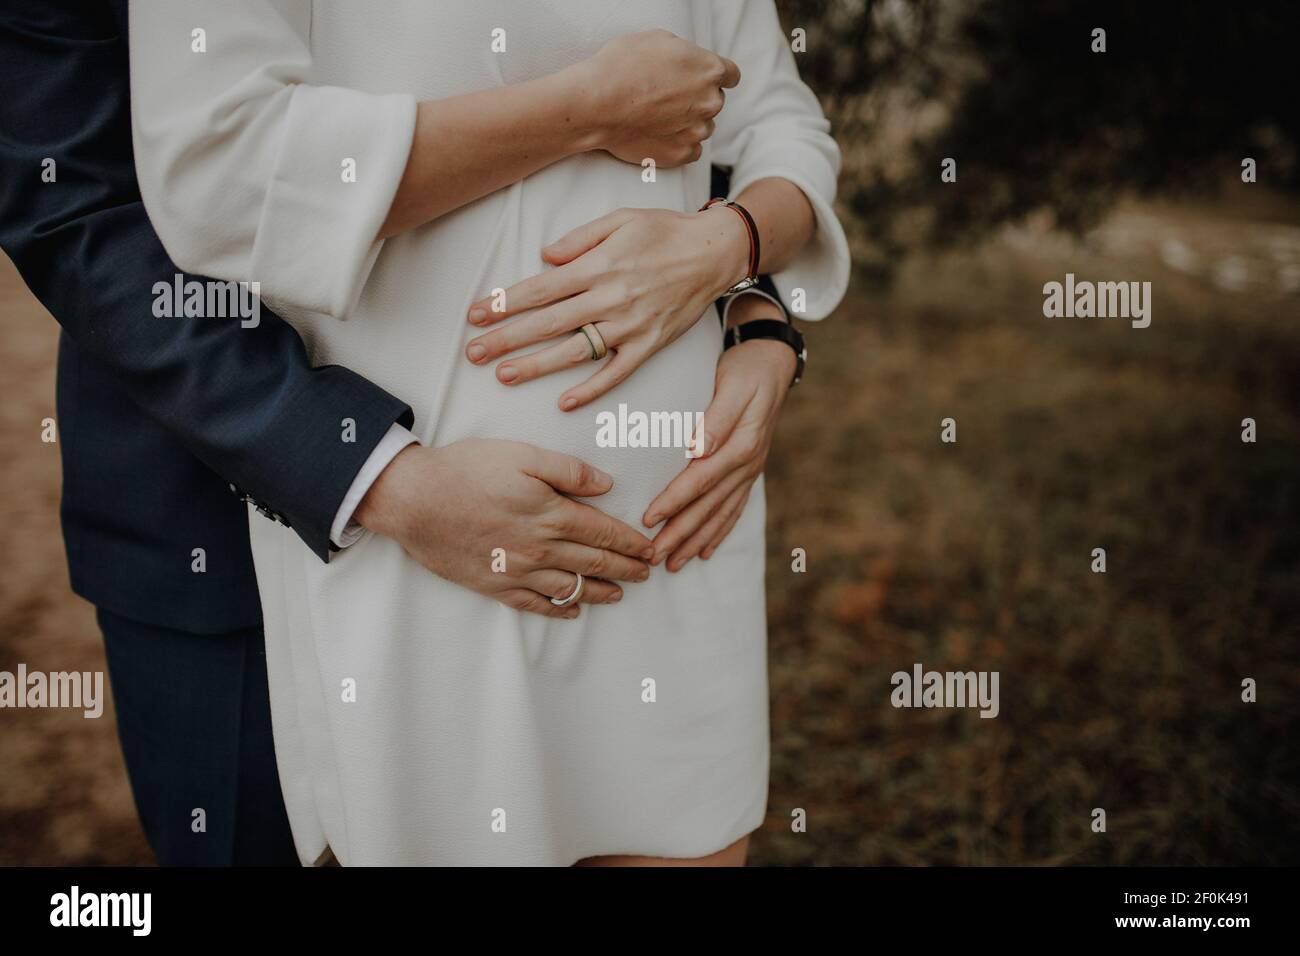 Bilder des Bauches einer schwangeren Frau. Ihre Hände und die Ihres Mannes liegen gefaltet auf ihrem runden Bauch. Foto Stock